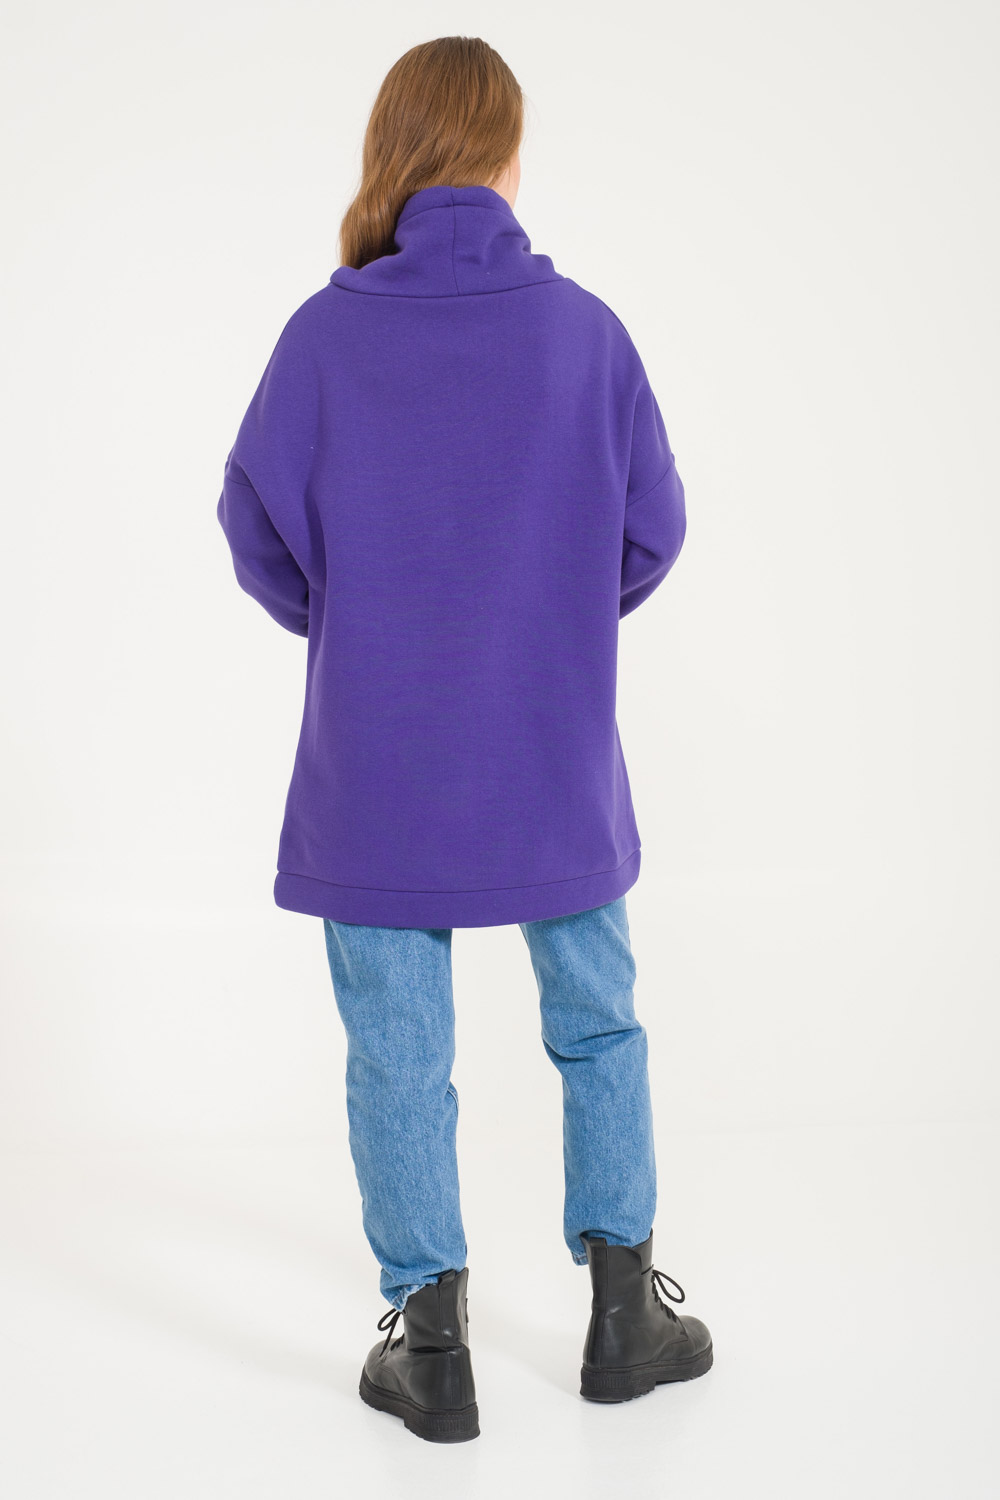 Turtleneck Purple Sweatshirt with Kangaroo Pocket